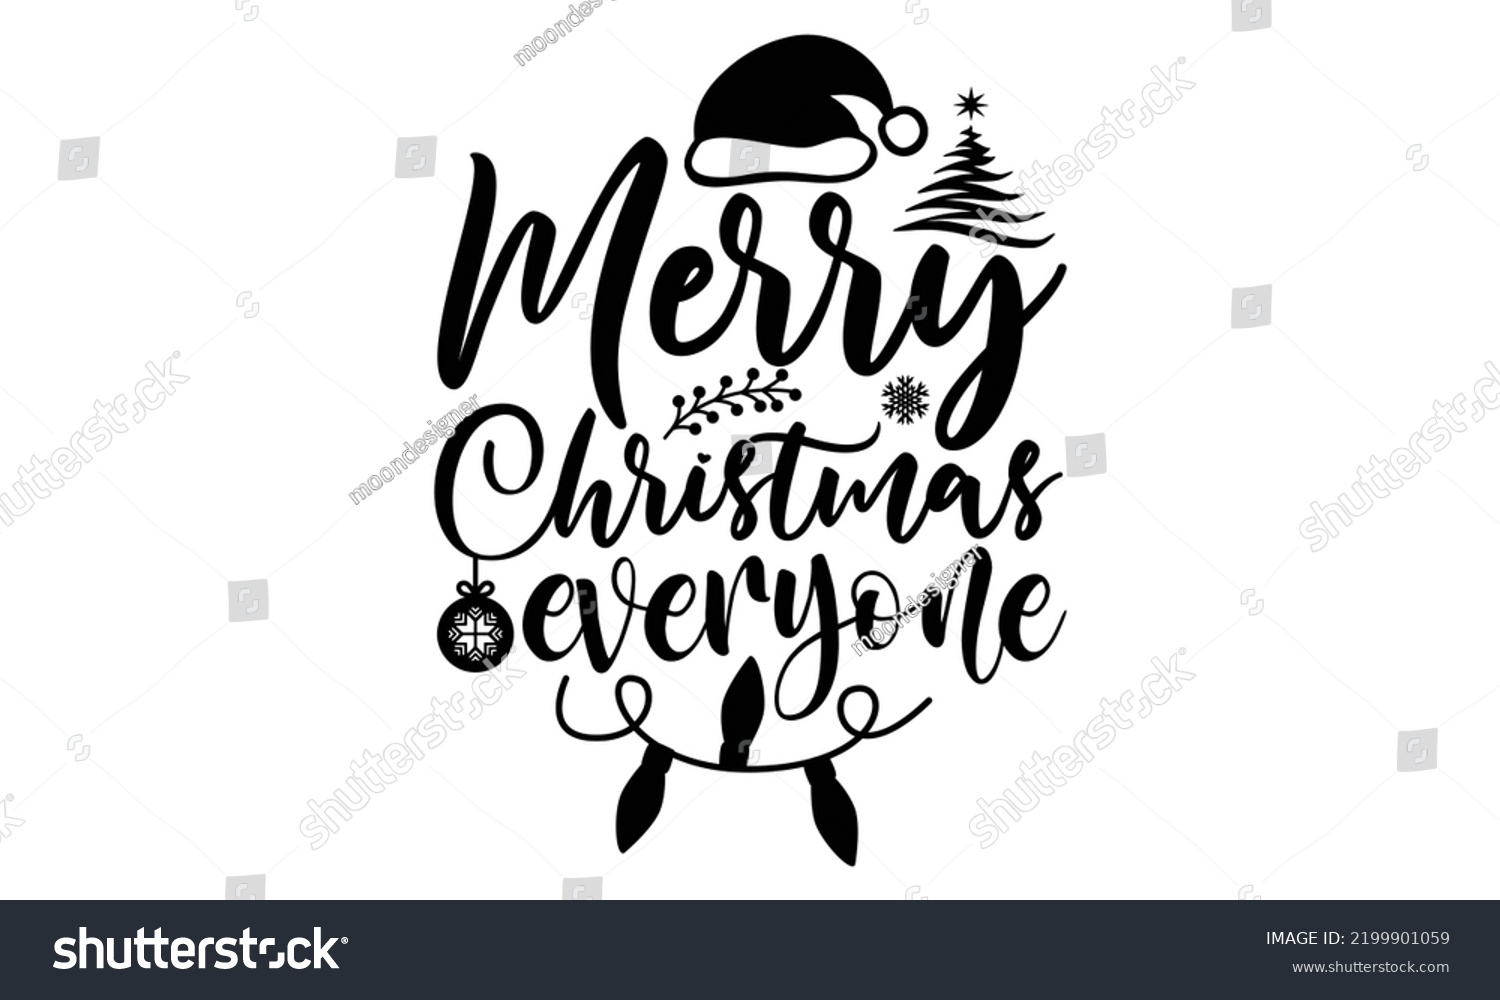 SVG of Merry Christmas everyone-Christmas t shirt Typography, Silhouette, Christmas SVG Cut Files for T-shirt, mug, poster and more, Good for, mug, gift, printing press svg